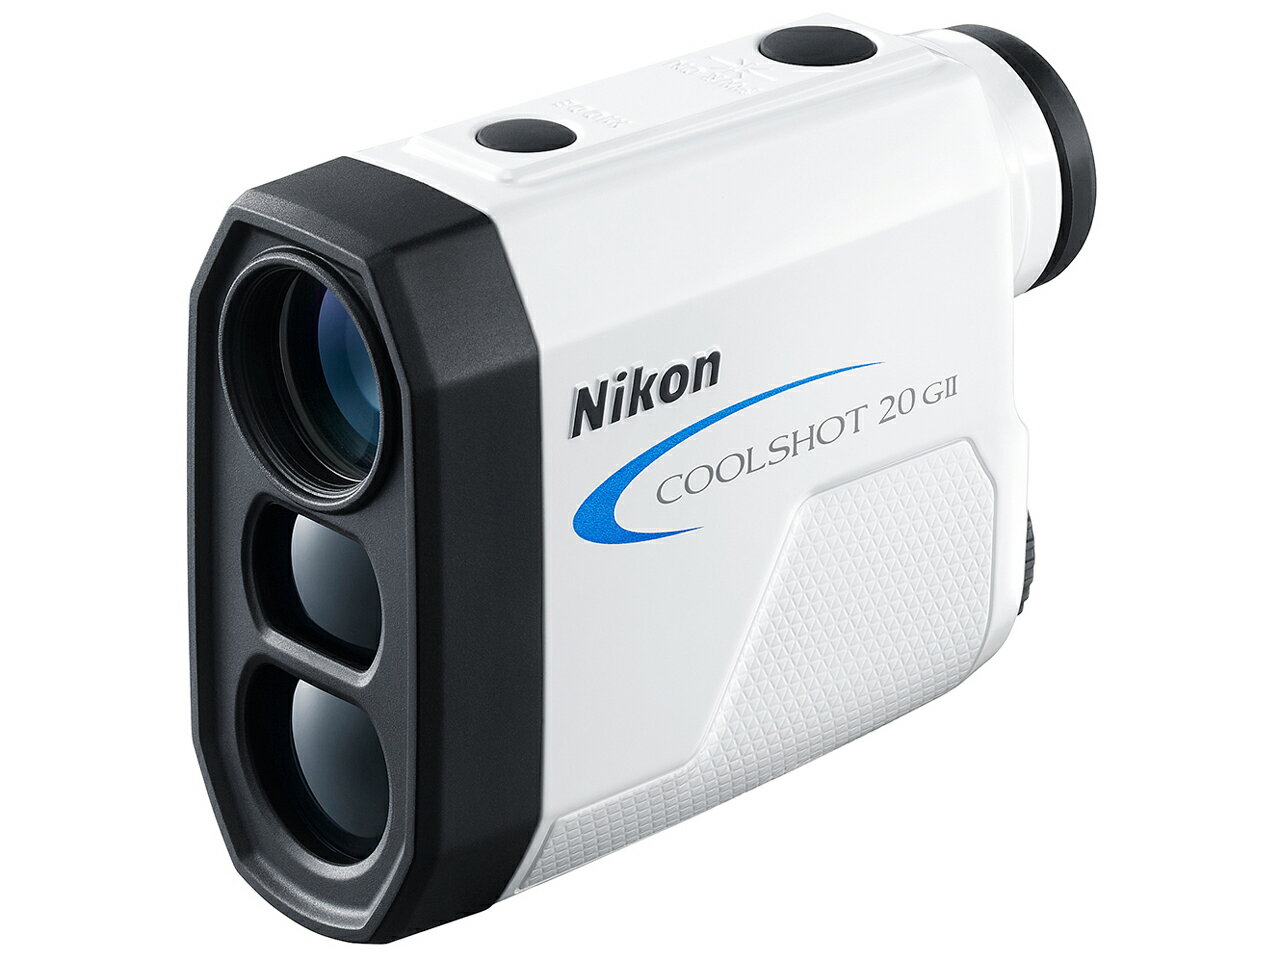 Nikon COOLSHOT 20 G II レーザー距離計 【即納】【あす楽】【プレゼント】